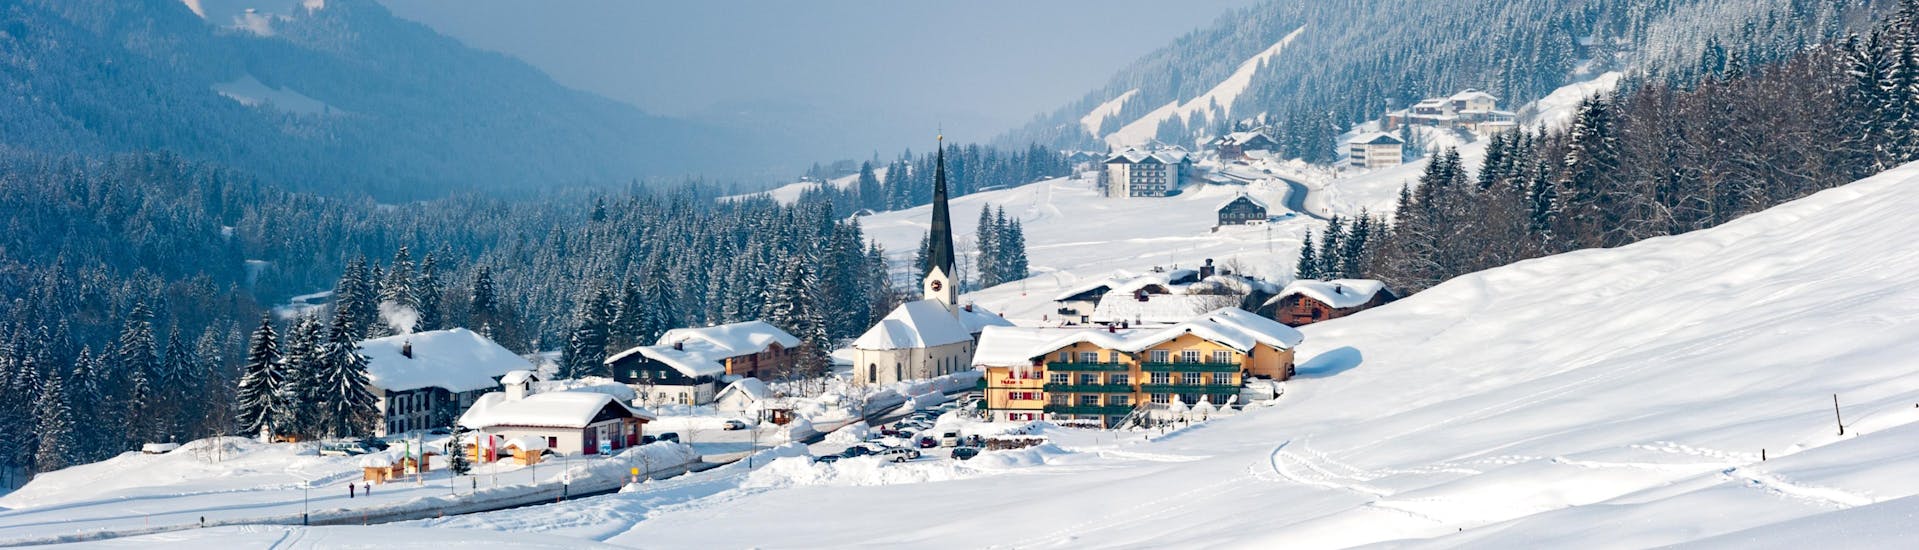 Bild einer kleinen Stadt an den Hängen des Allgäus, wo man Skikurse buchen kann.